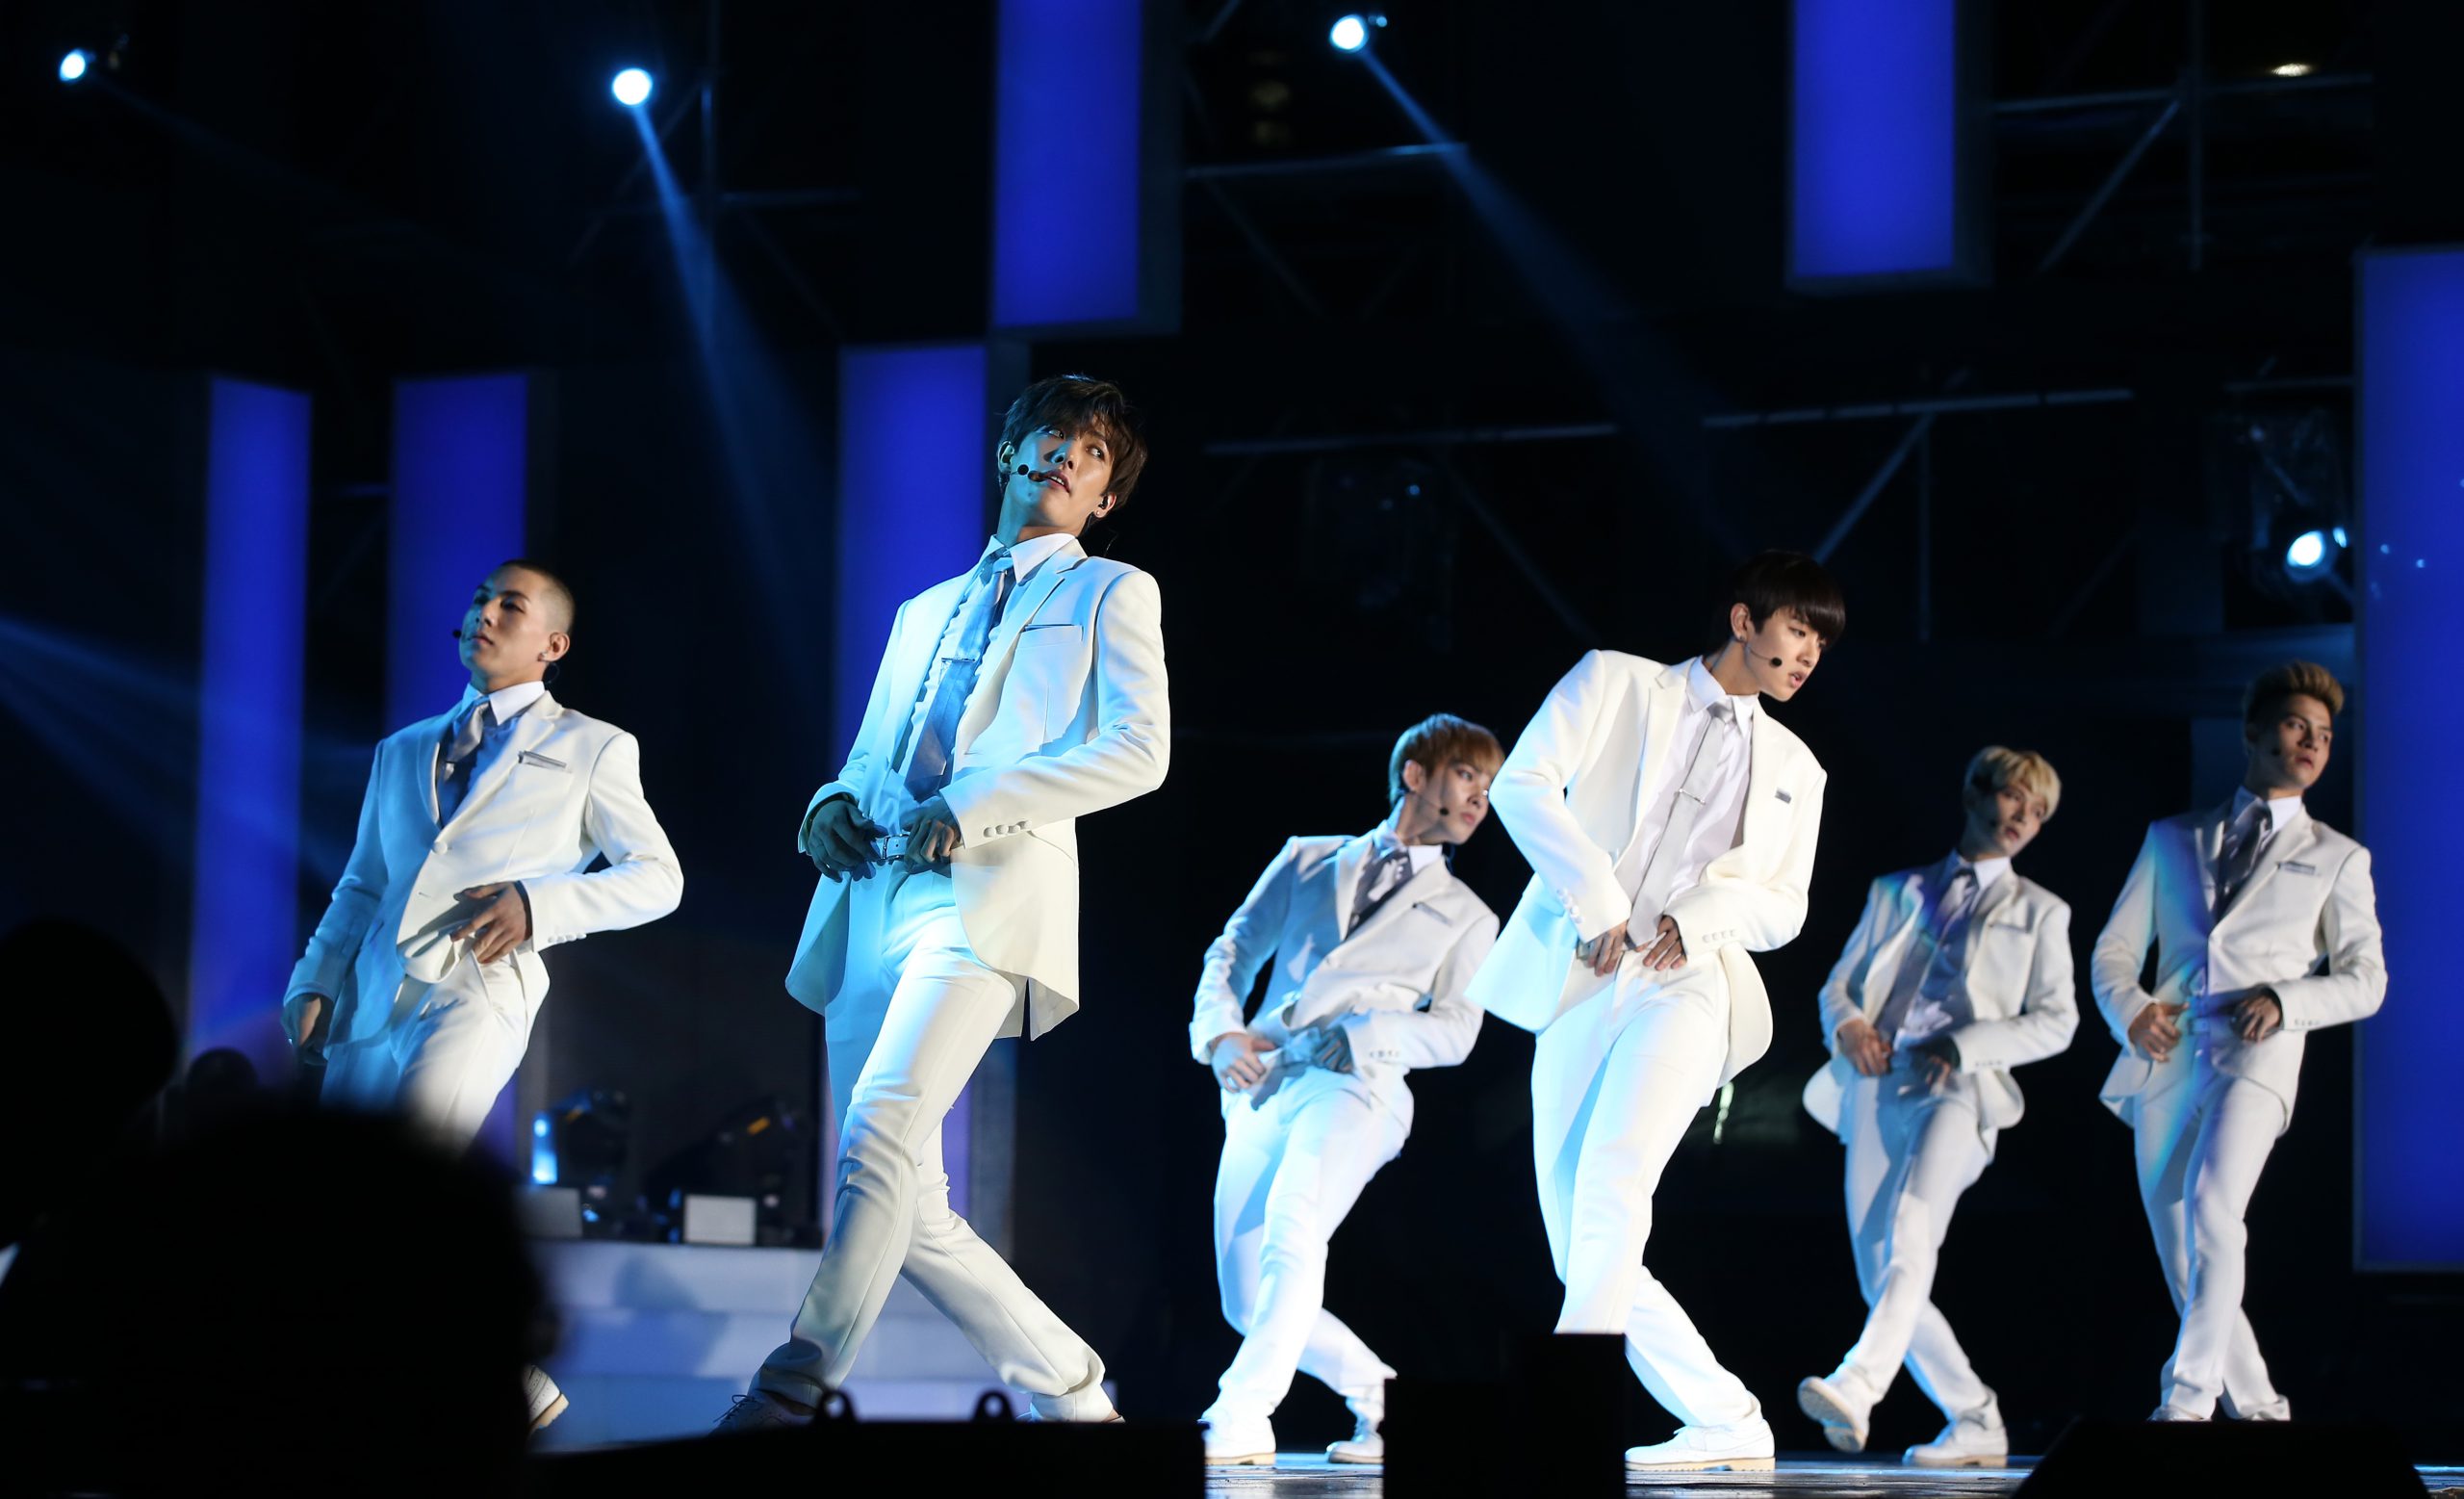 Le groupe Cross Gene, un boys band K-pop multiculturel promu par l’agence Amuse Korea. Photographié à Séoul en 2015. Source: https://commons.wikimedia.org/wiki/File:Cross_Gene_at_2015_Summer_K-POP_Festival.jpg 